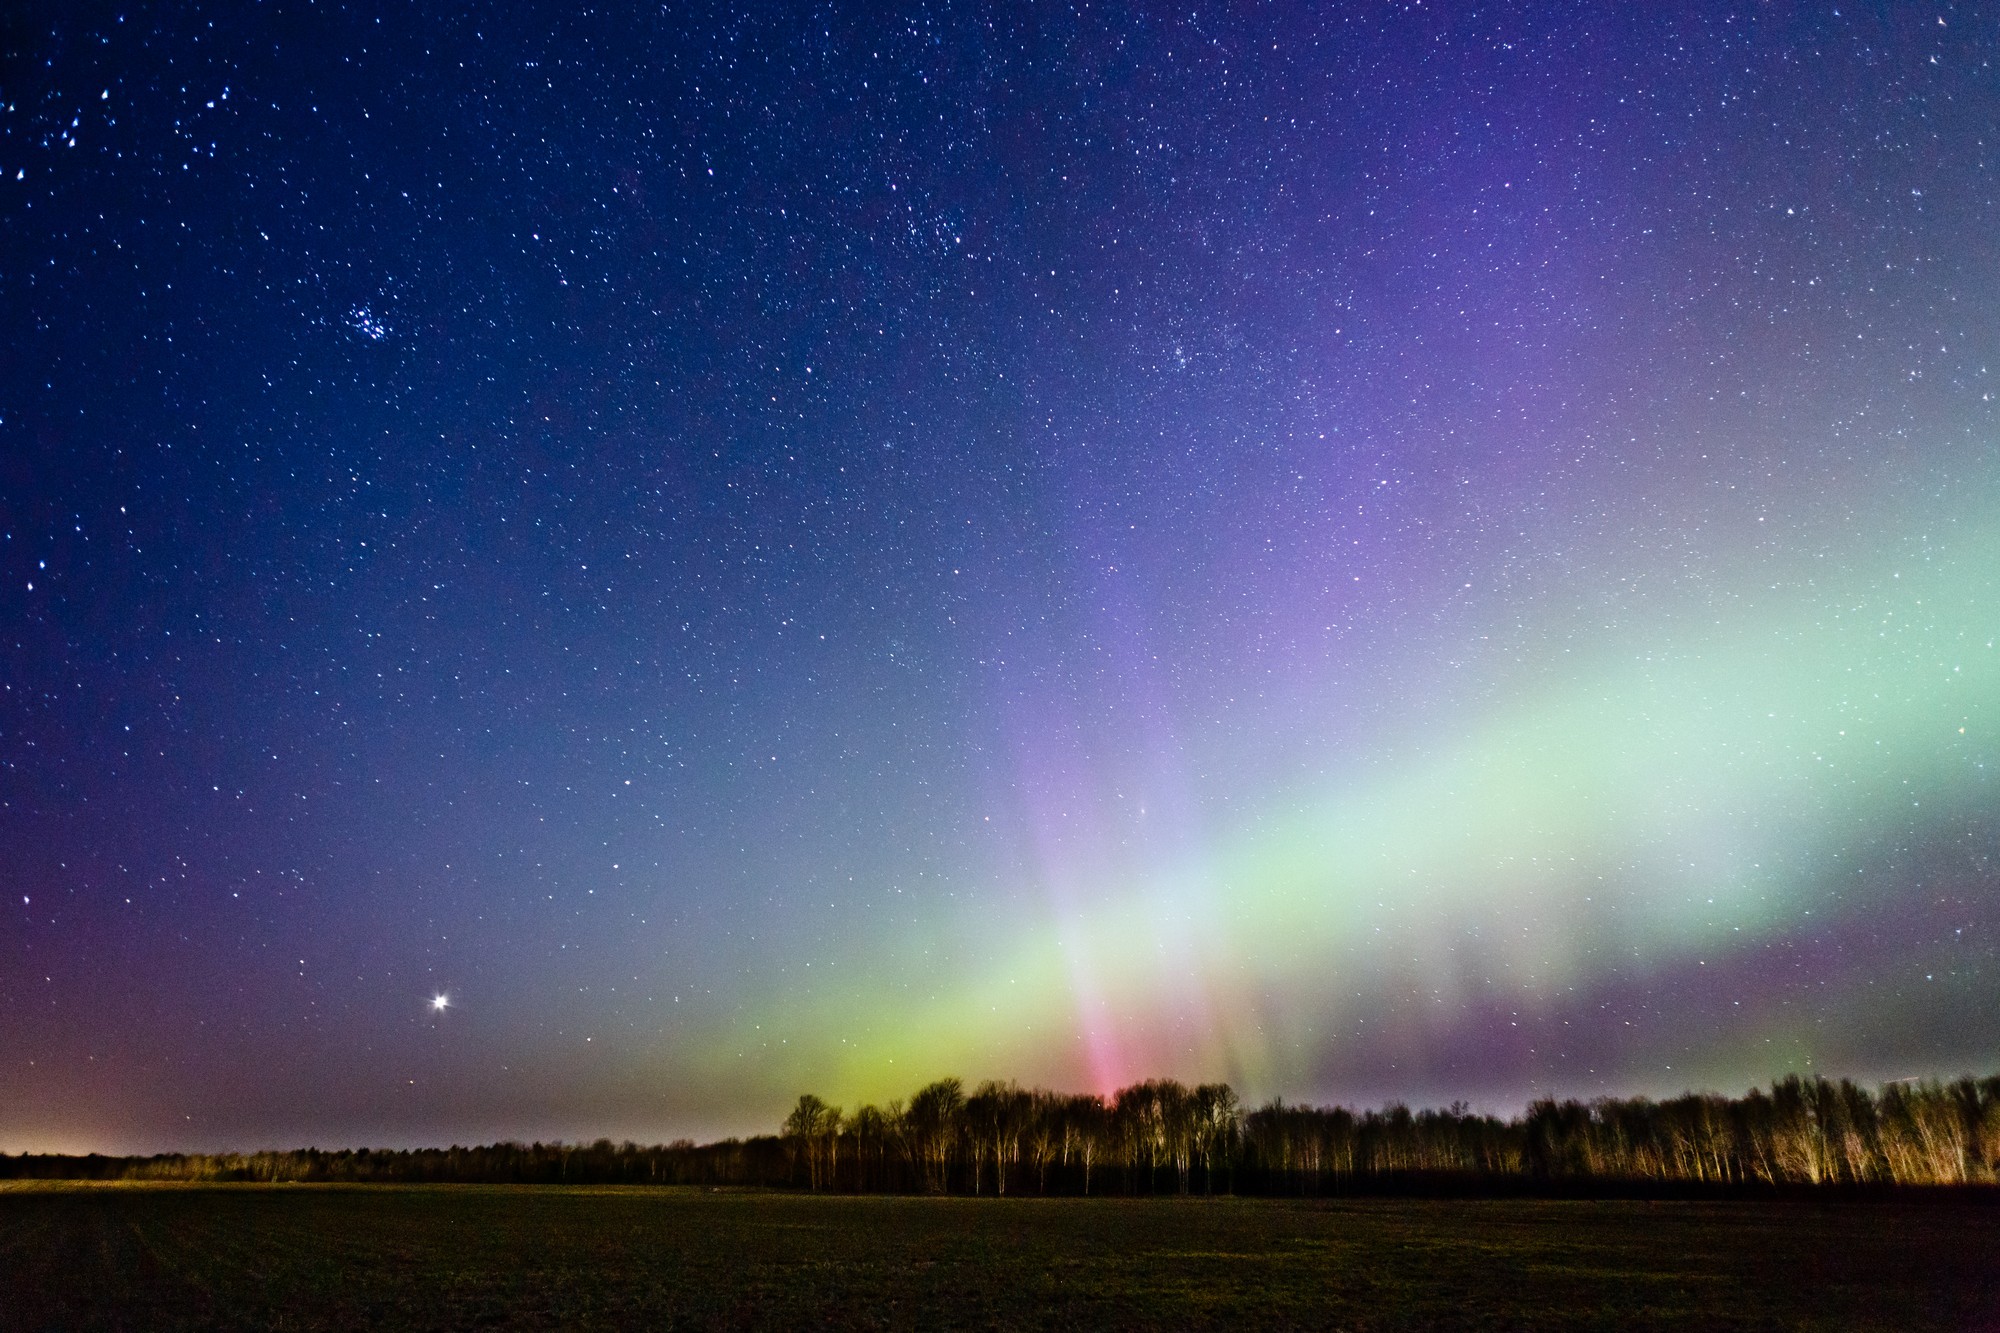 Catch the Aurora Borealis Season in Alpena, Michigan